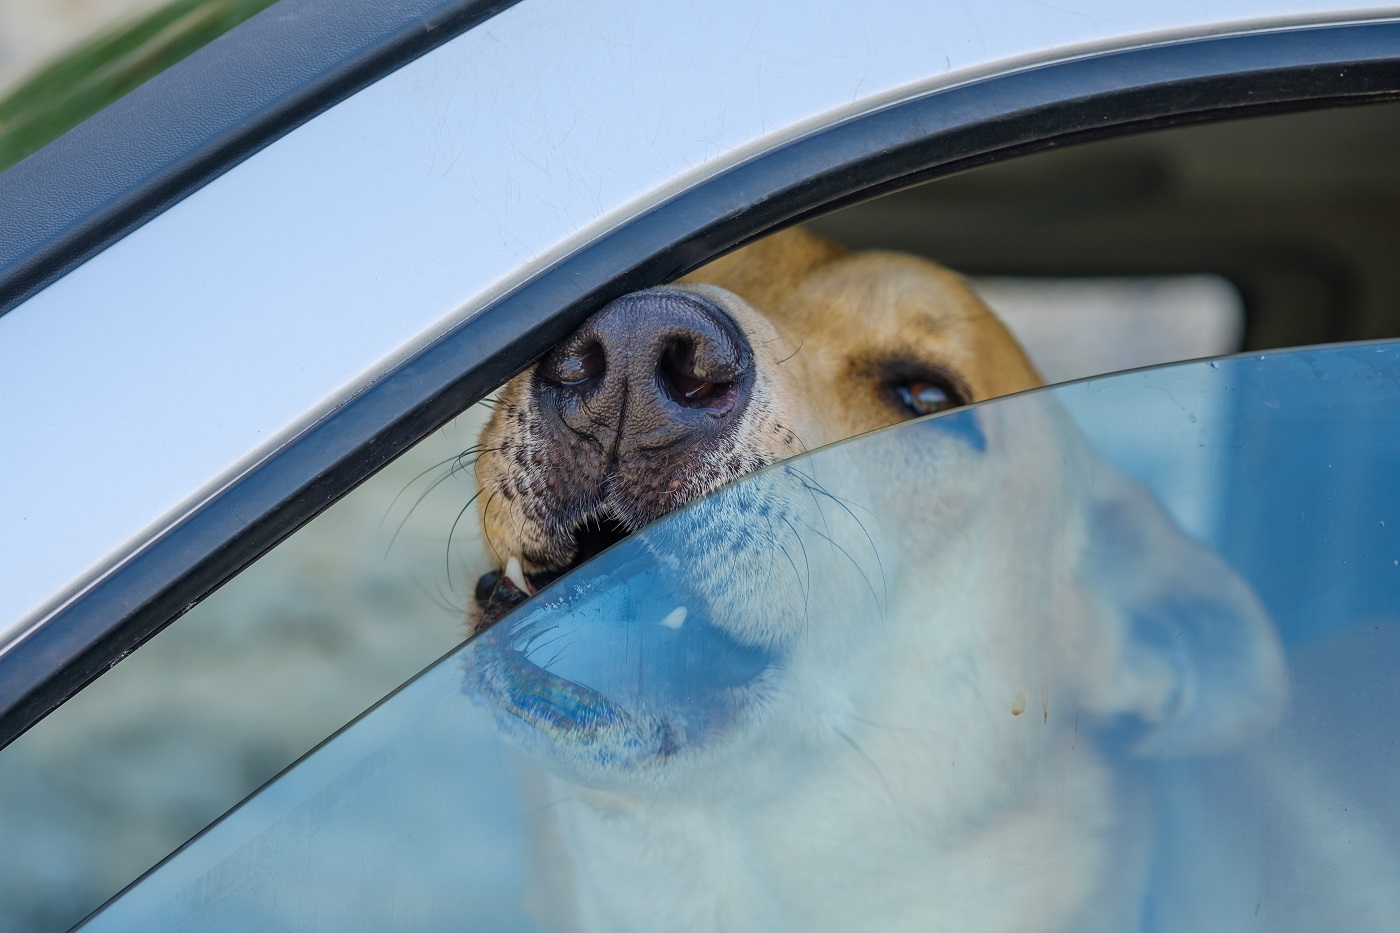 Hunde und Hitze: Darf ich Tiere im Auto lassen? 